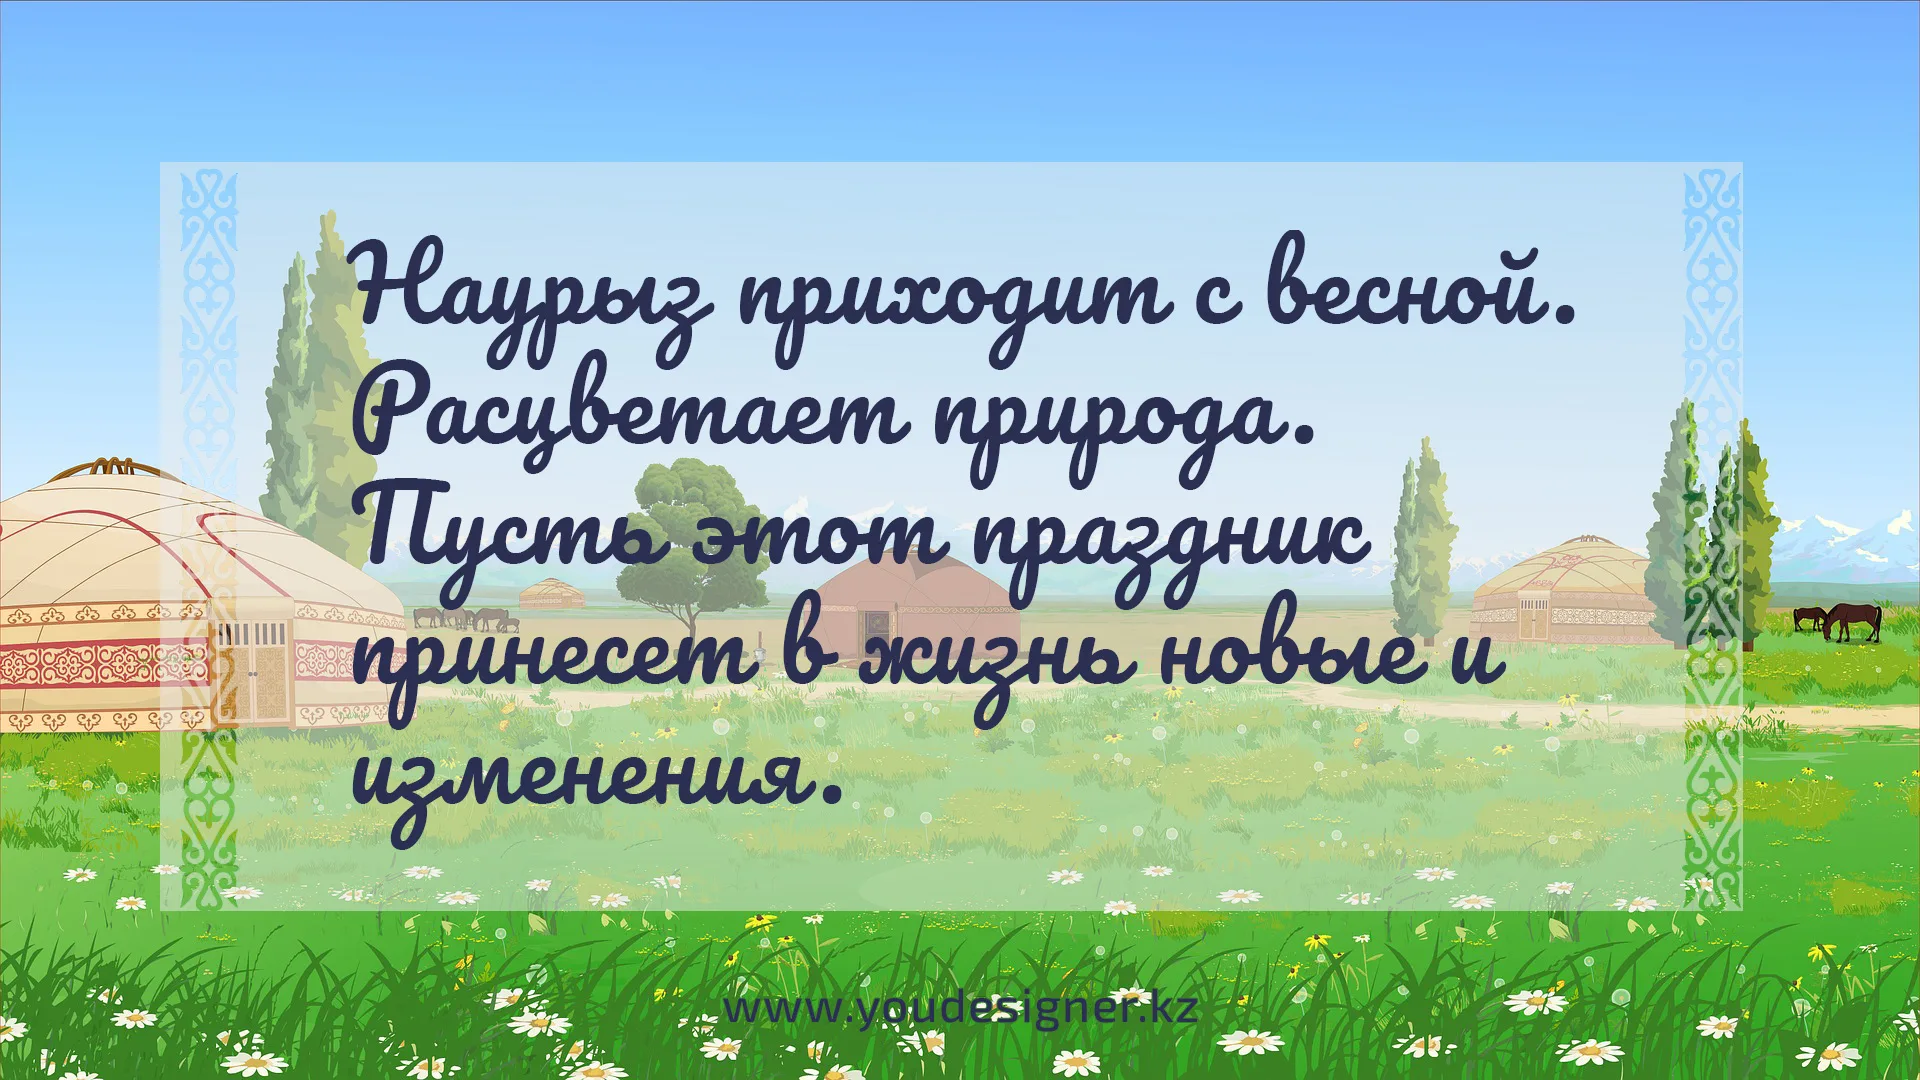 Стихотворение про наурыз. Поздравление с Наурызом на казахском языке. Наурыз на казахском языке. С праздником Наурыз на казахском языке. Детские стихи про Наурыз.